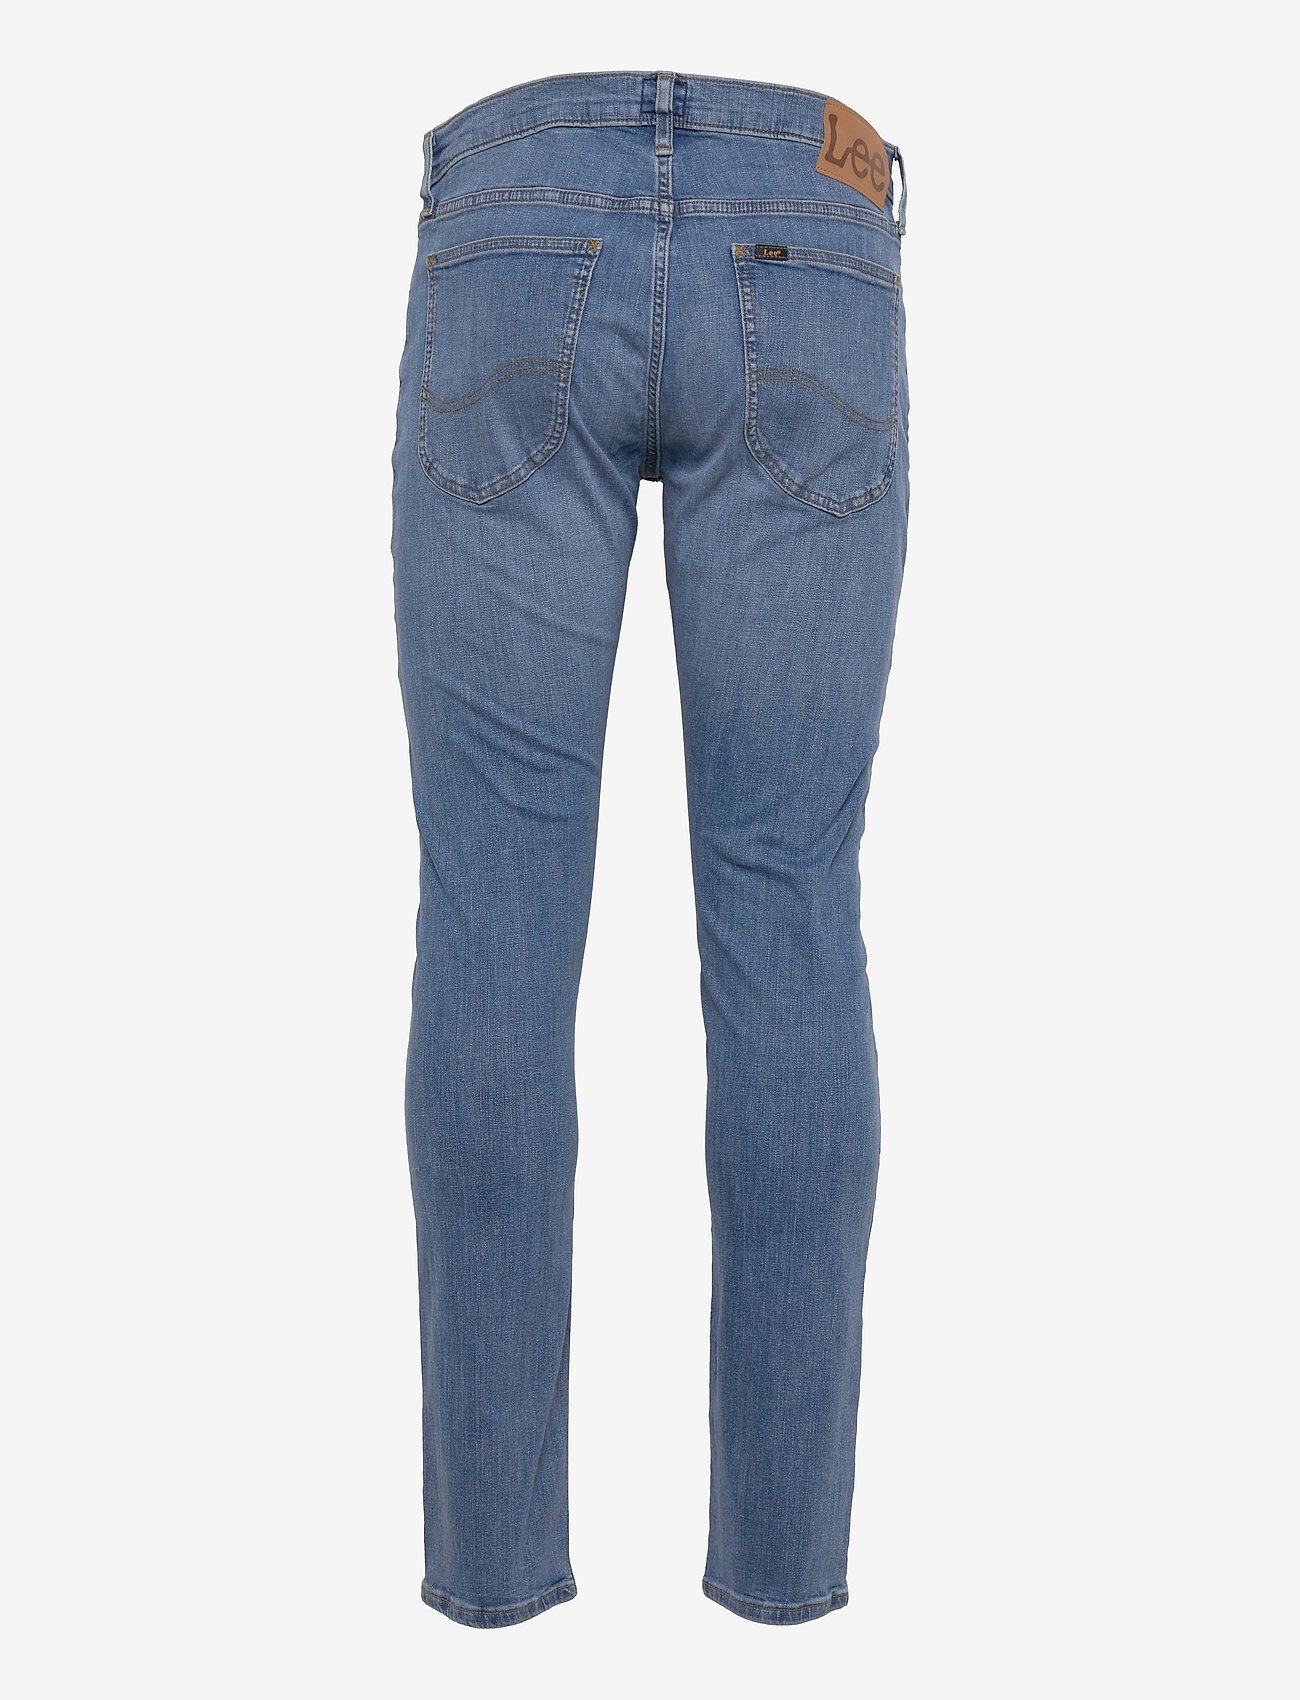 Lee Jeans - LUKE - slim jeans - worn in cody - 1